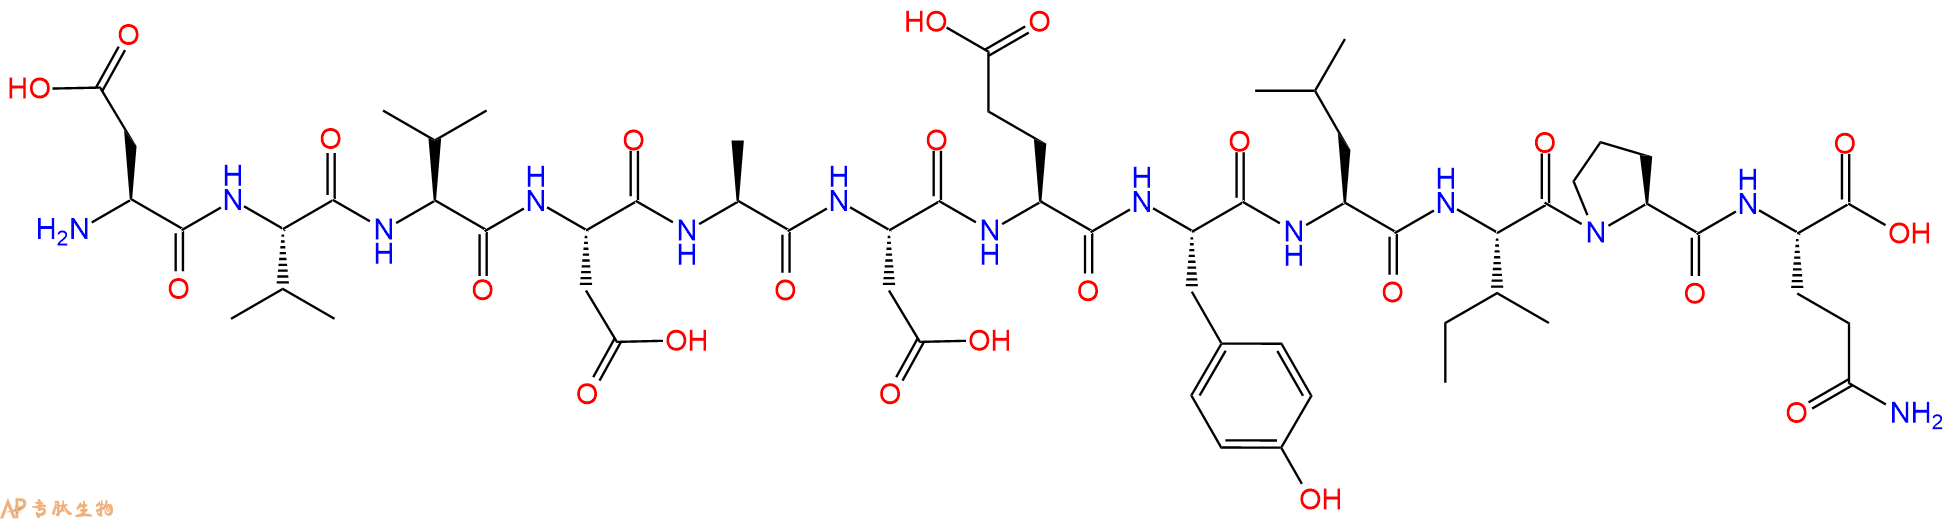 专肽生物产品表皮生长因子受体多肽（985-996） Epidermal Growth Factor Receptor Peptide (985-996)96249-43-3